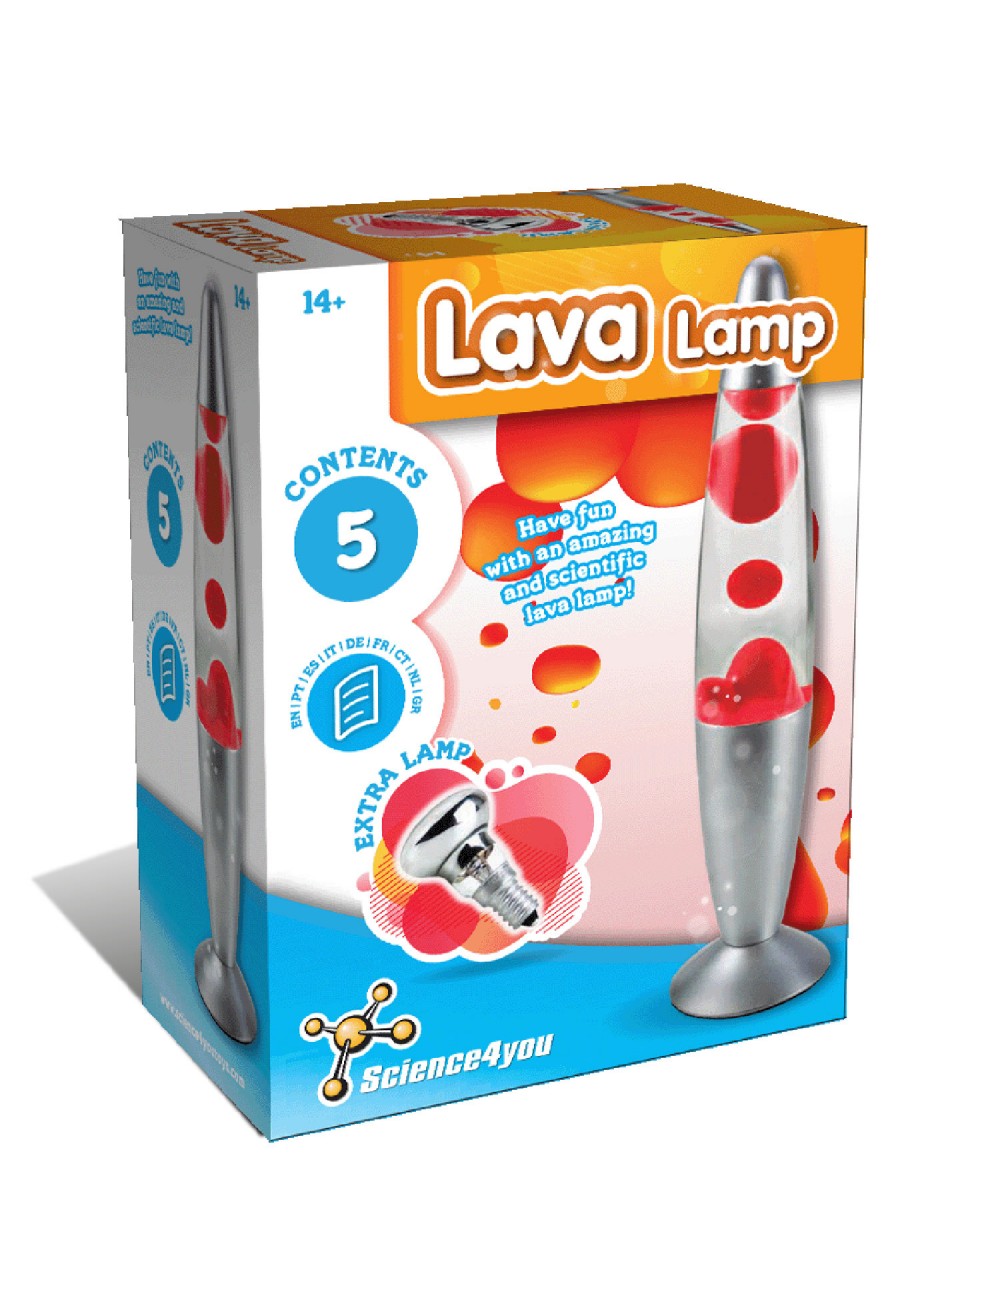 Lampe à Lave Neo César : Super Idées cadeaux pour enfants et adultes